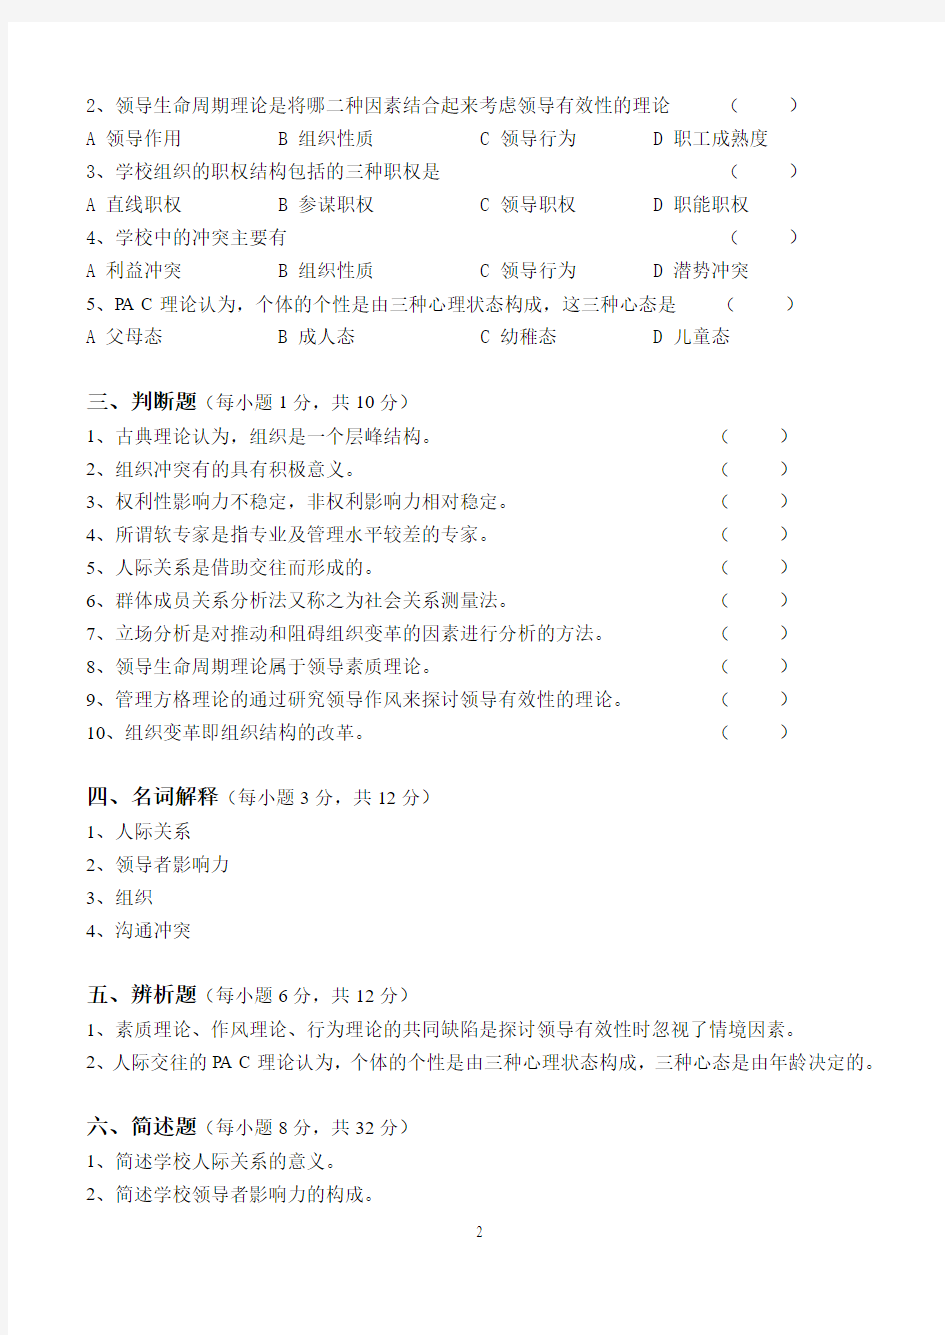 学校管理心理学第3阶段练习题3b 江南大学考试题库答案,答案在最后一页